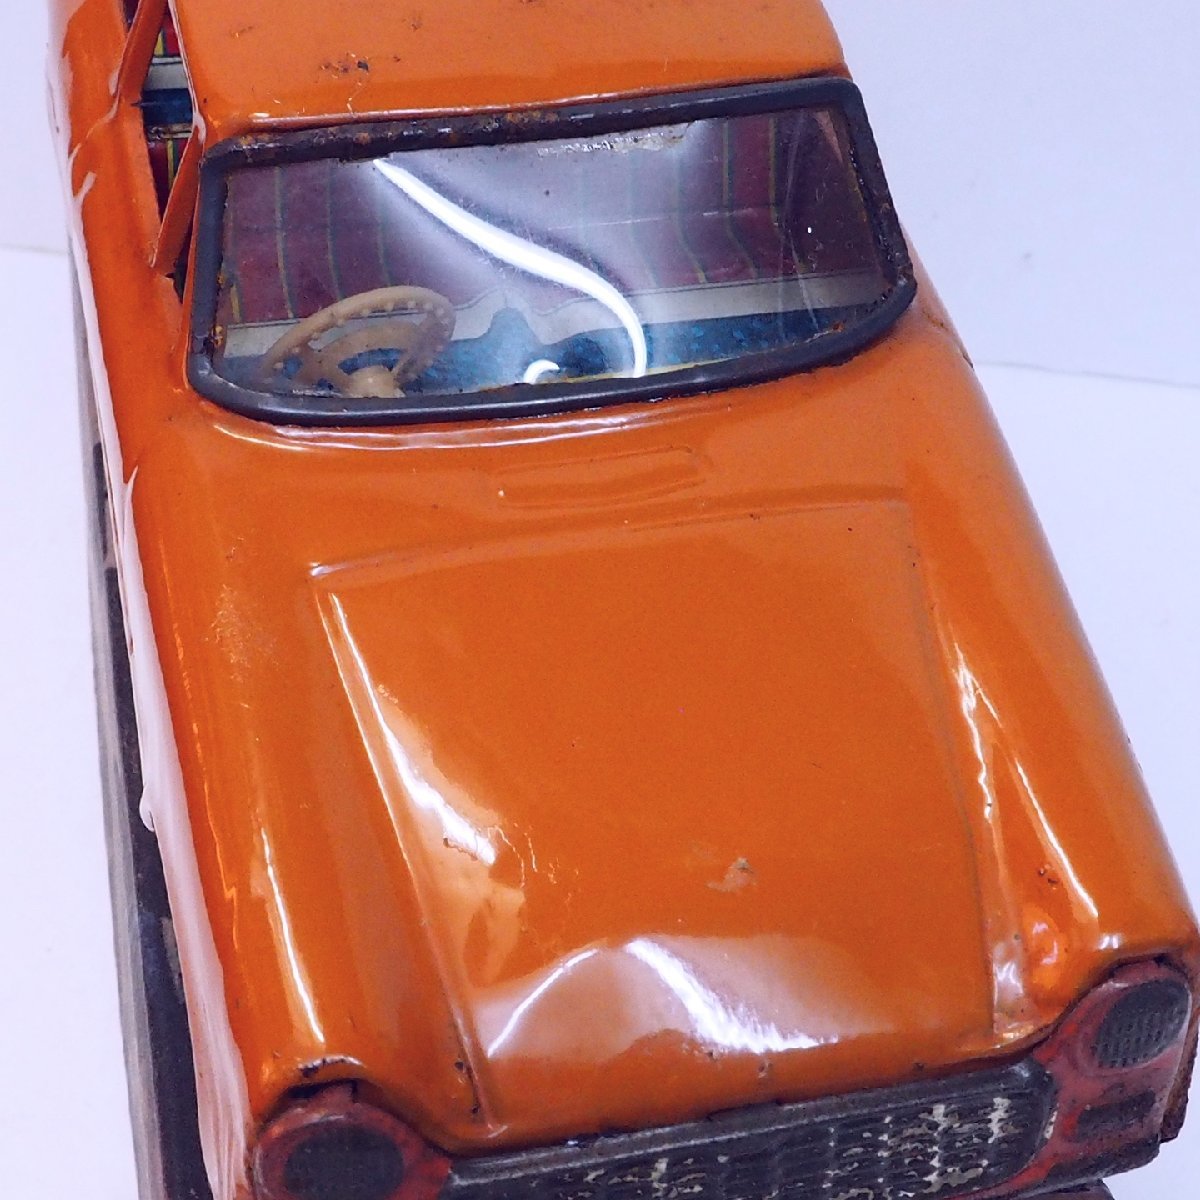  asahi игрушка [ Toyota Publica TOYOTA PUBLICA оранжевый orange ] жестяная пластина tin toy car миниатюра автомобиль миникар #ATC Asahi игрушка [ коробка. копирование ]0053